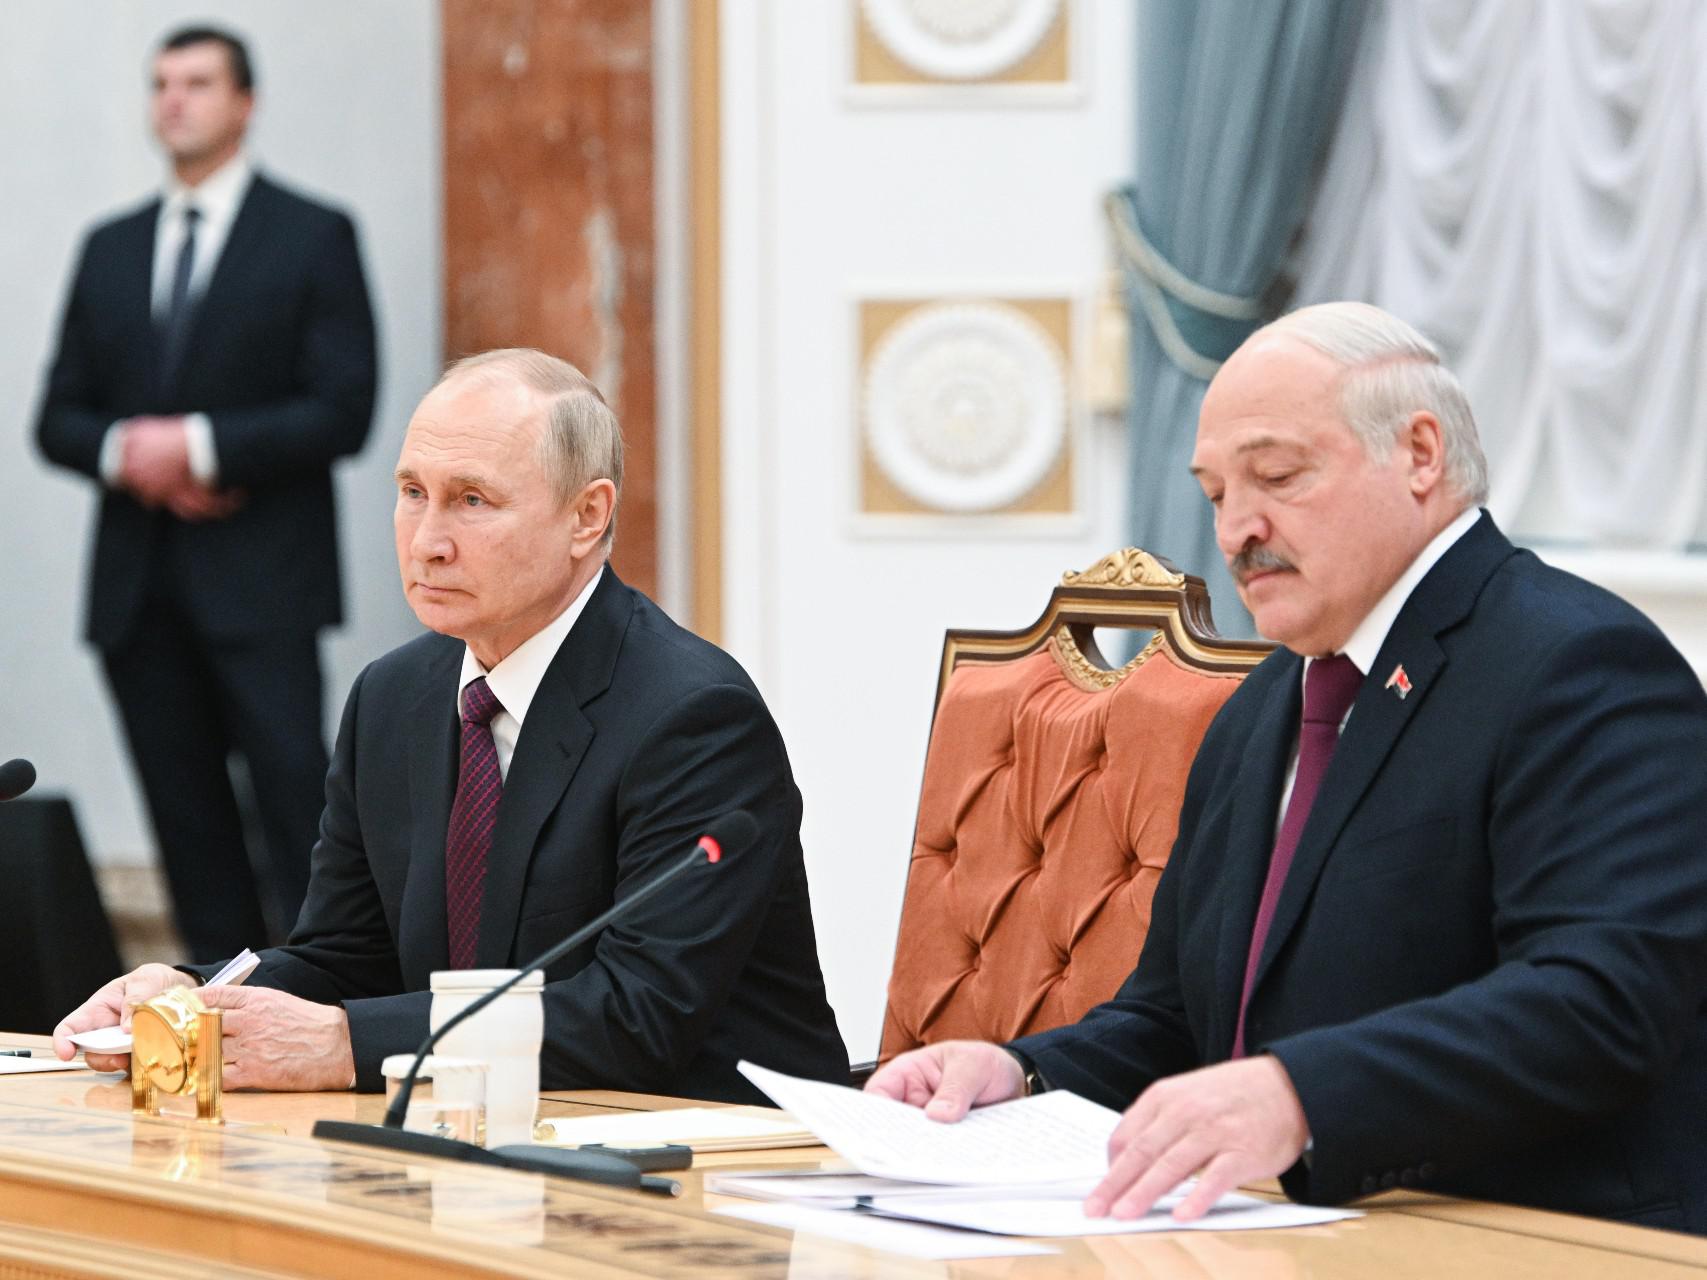 L'Europarlamento riconosce Lukashenko complice dei crimini di Putin